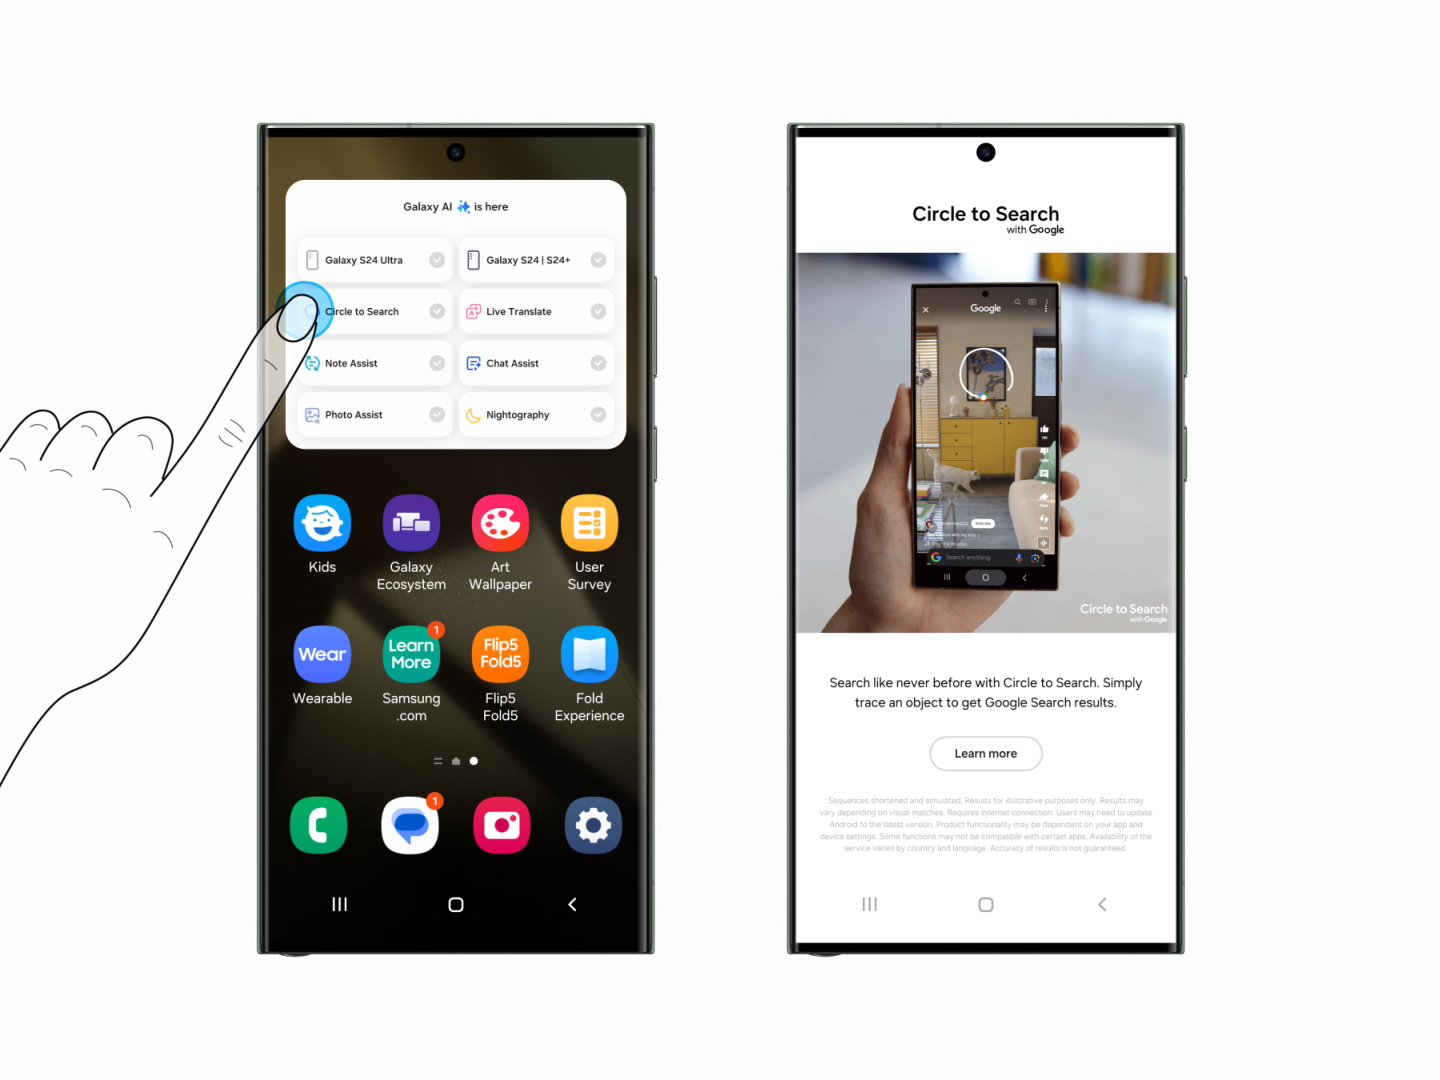 Samsung cho người dùng iOS trải nghiệm Galaxy AI qua “Try Galaxy” - 005 Try Galaxy Circle to Search 2D 0213